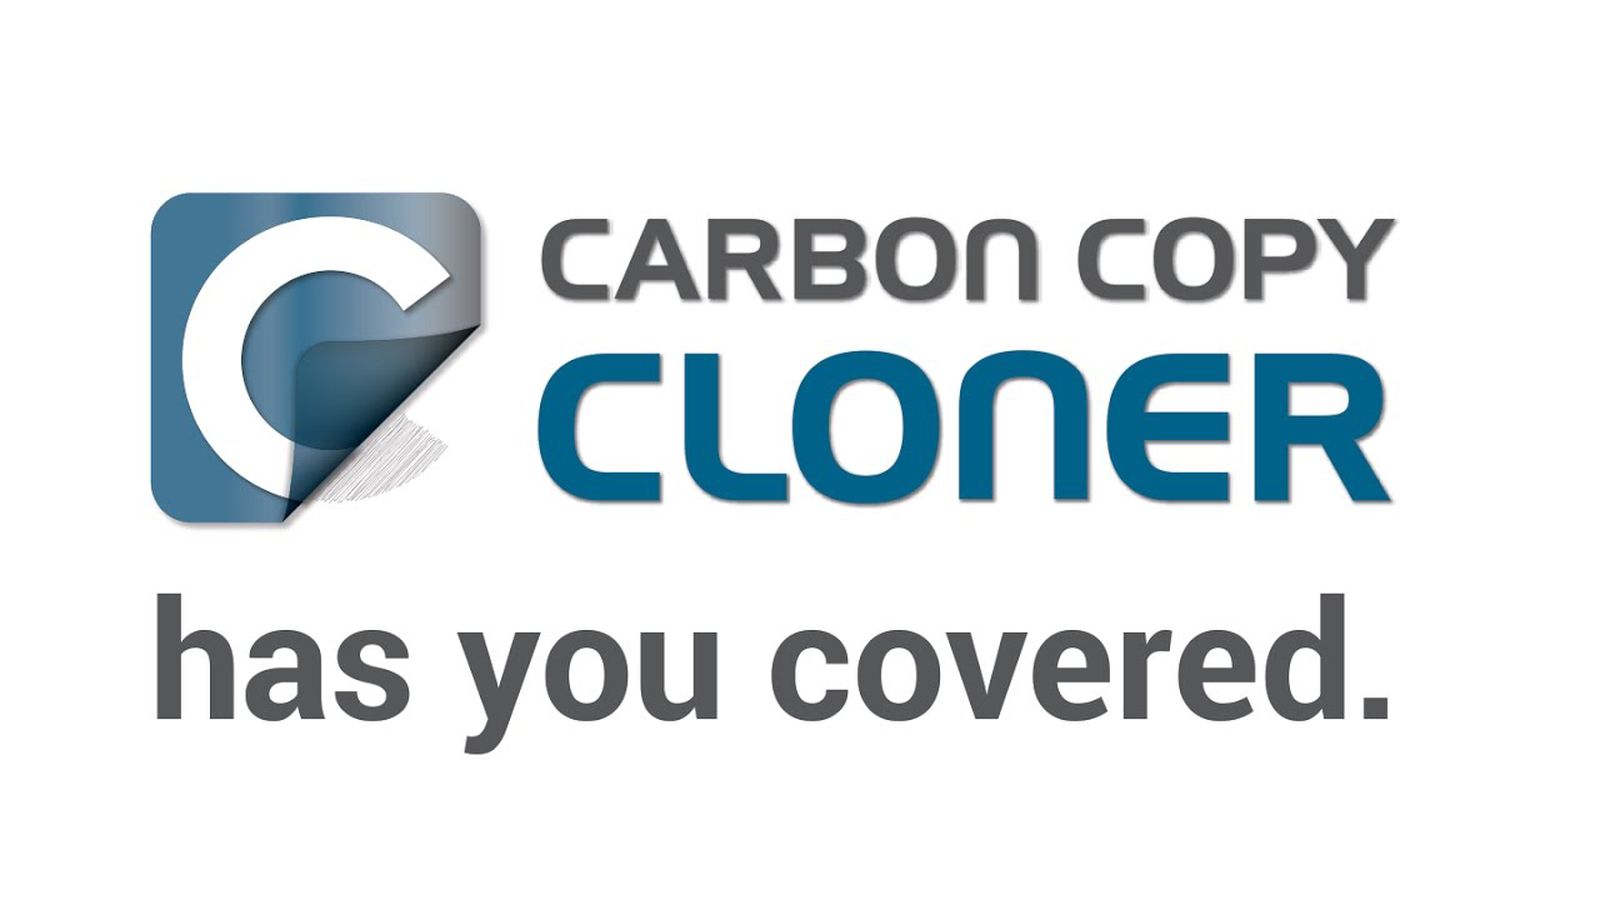 carbon copy cloner sale